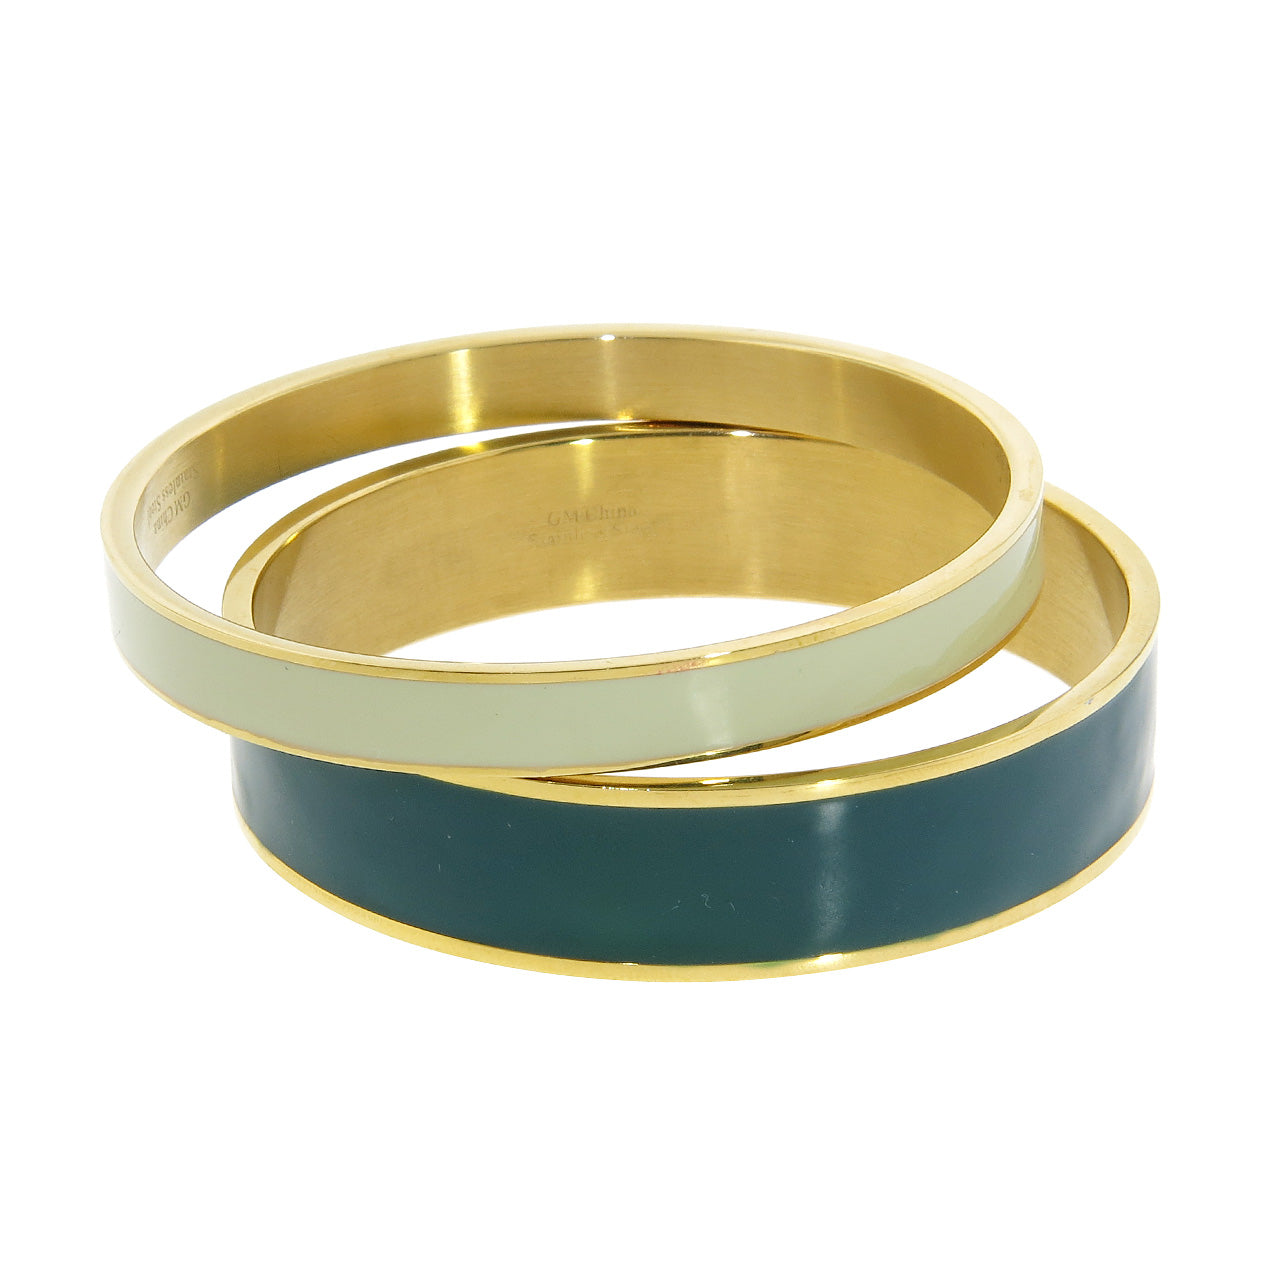 Gianna 14k Gold Plated Stainless Steel Bangle Bracelet Set